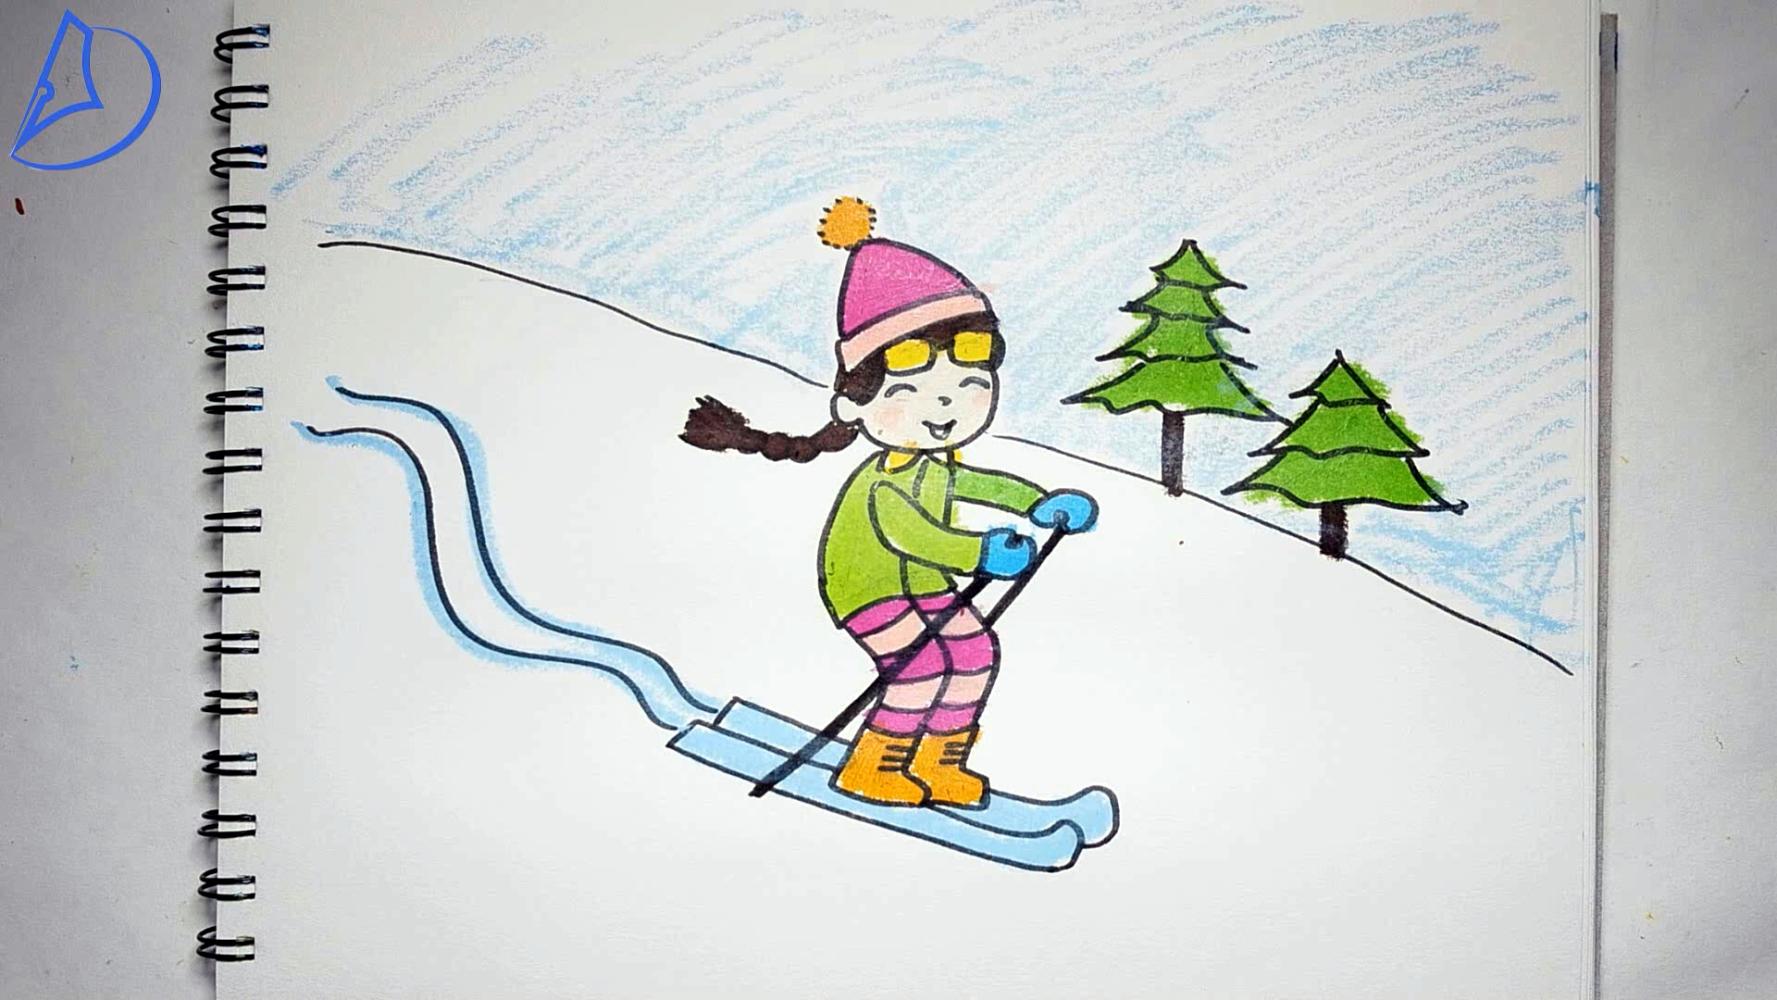 冰雪运动简笔画 冰雪运动简笔画图片 - 水彩迷